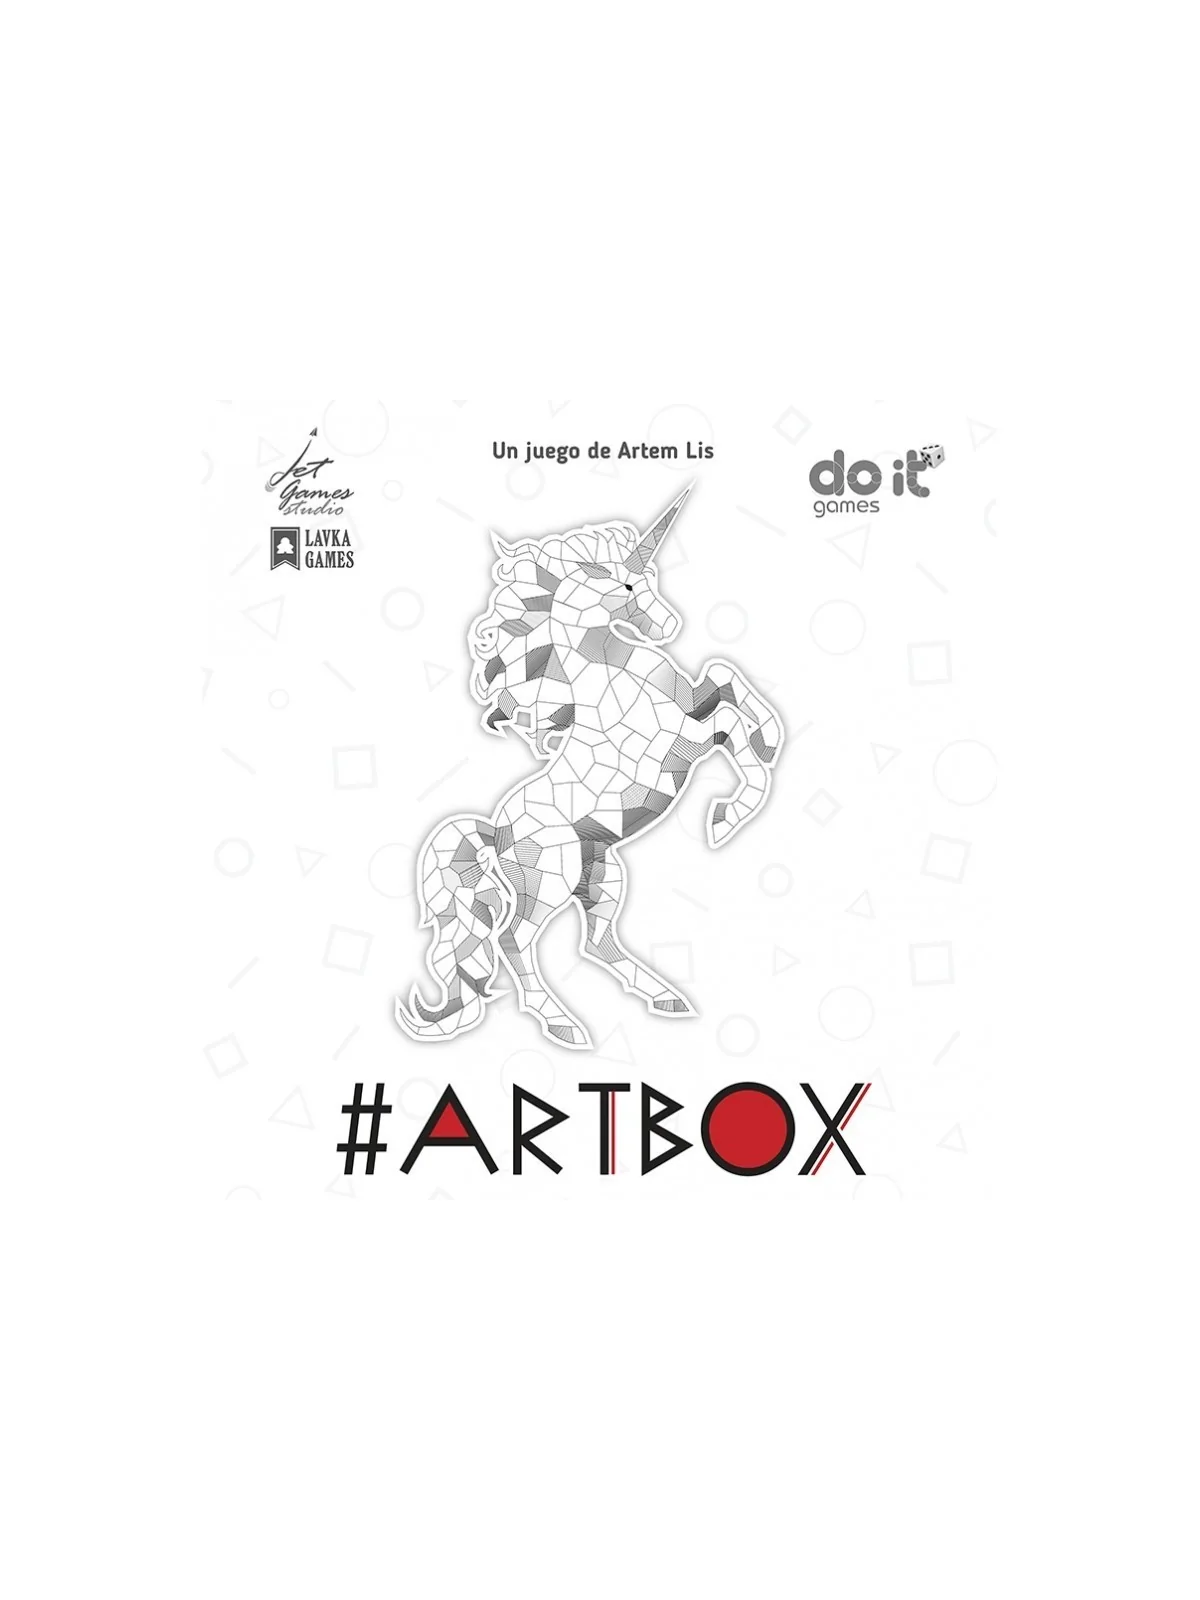 Comprar Artbox barato al mejor precio 26,95 € de Do It Games